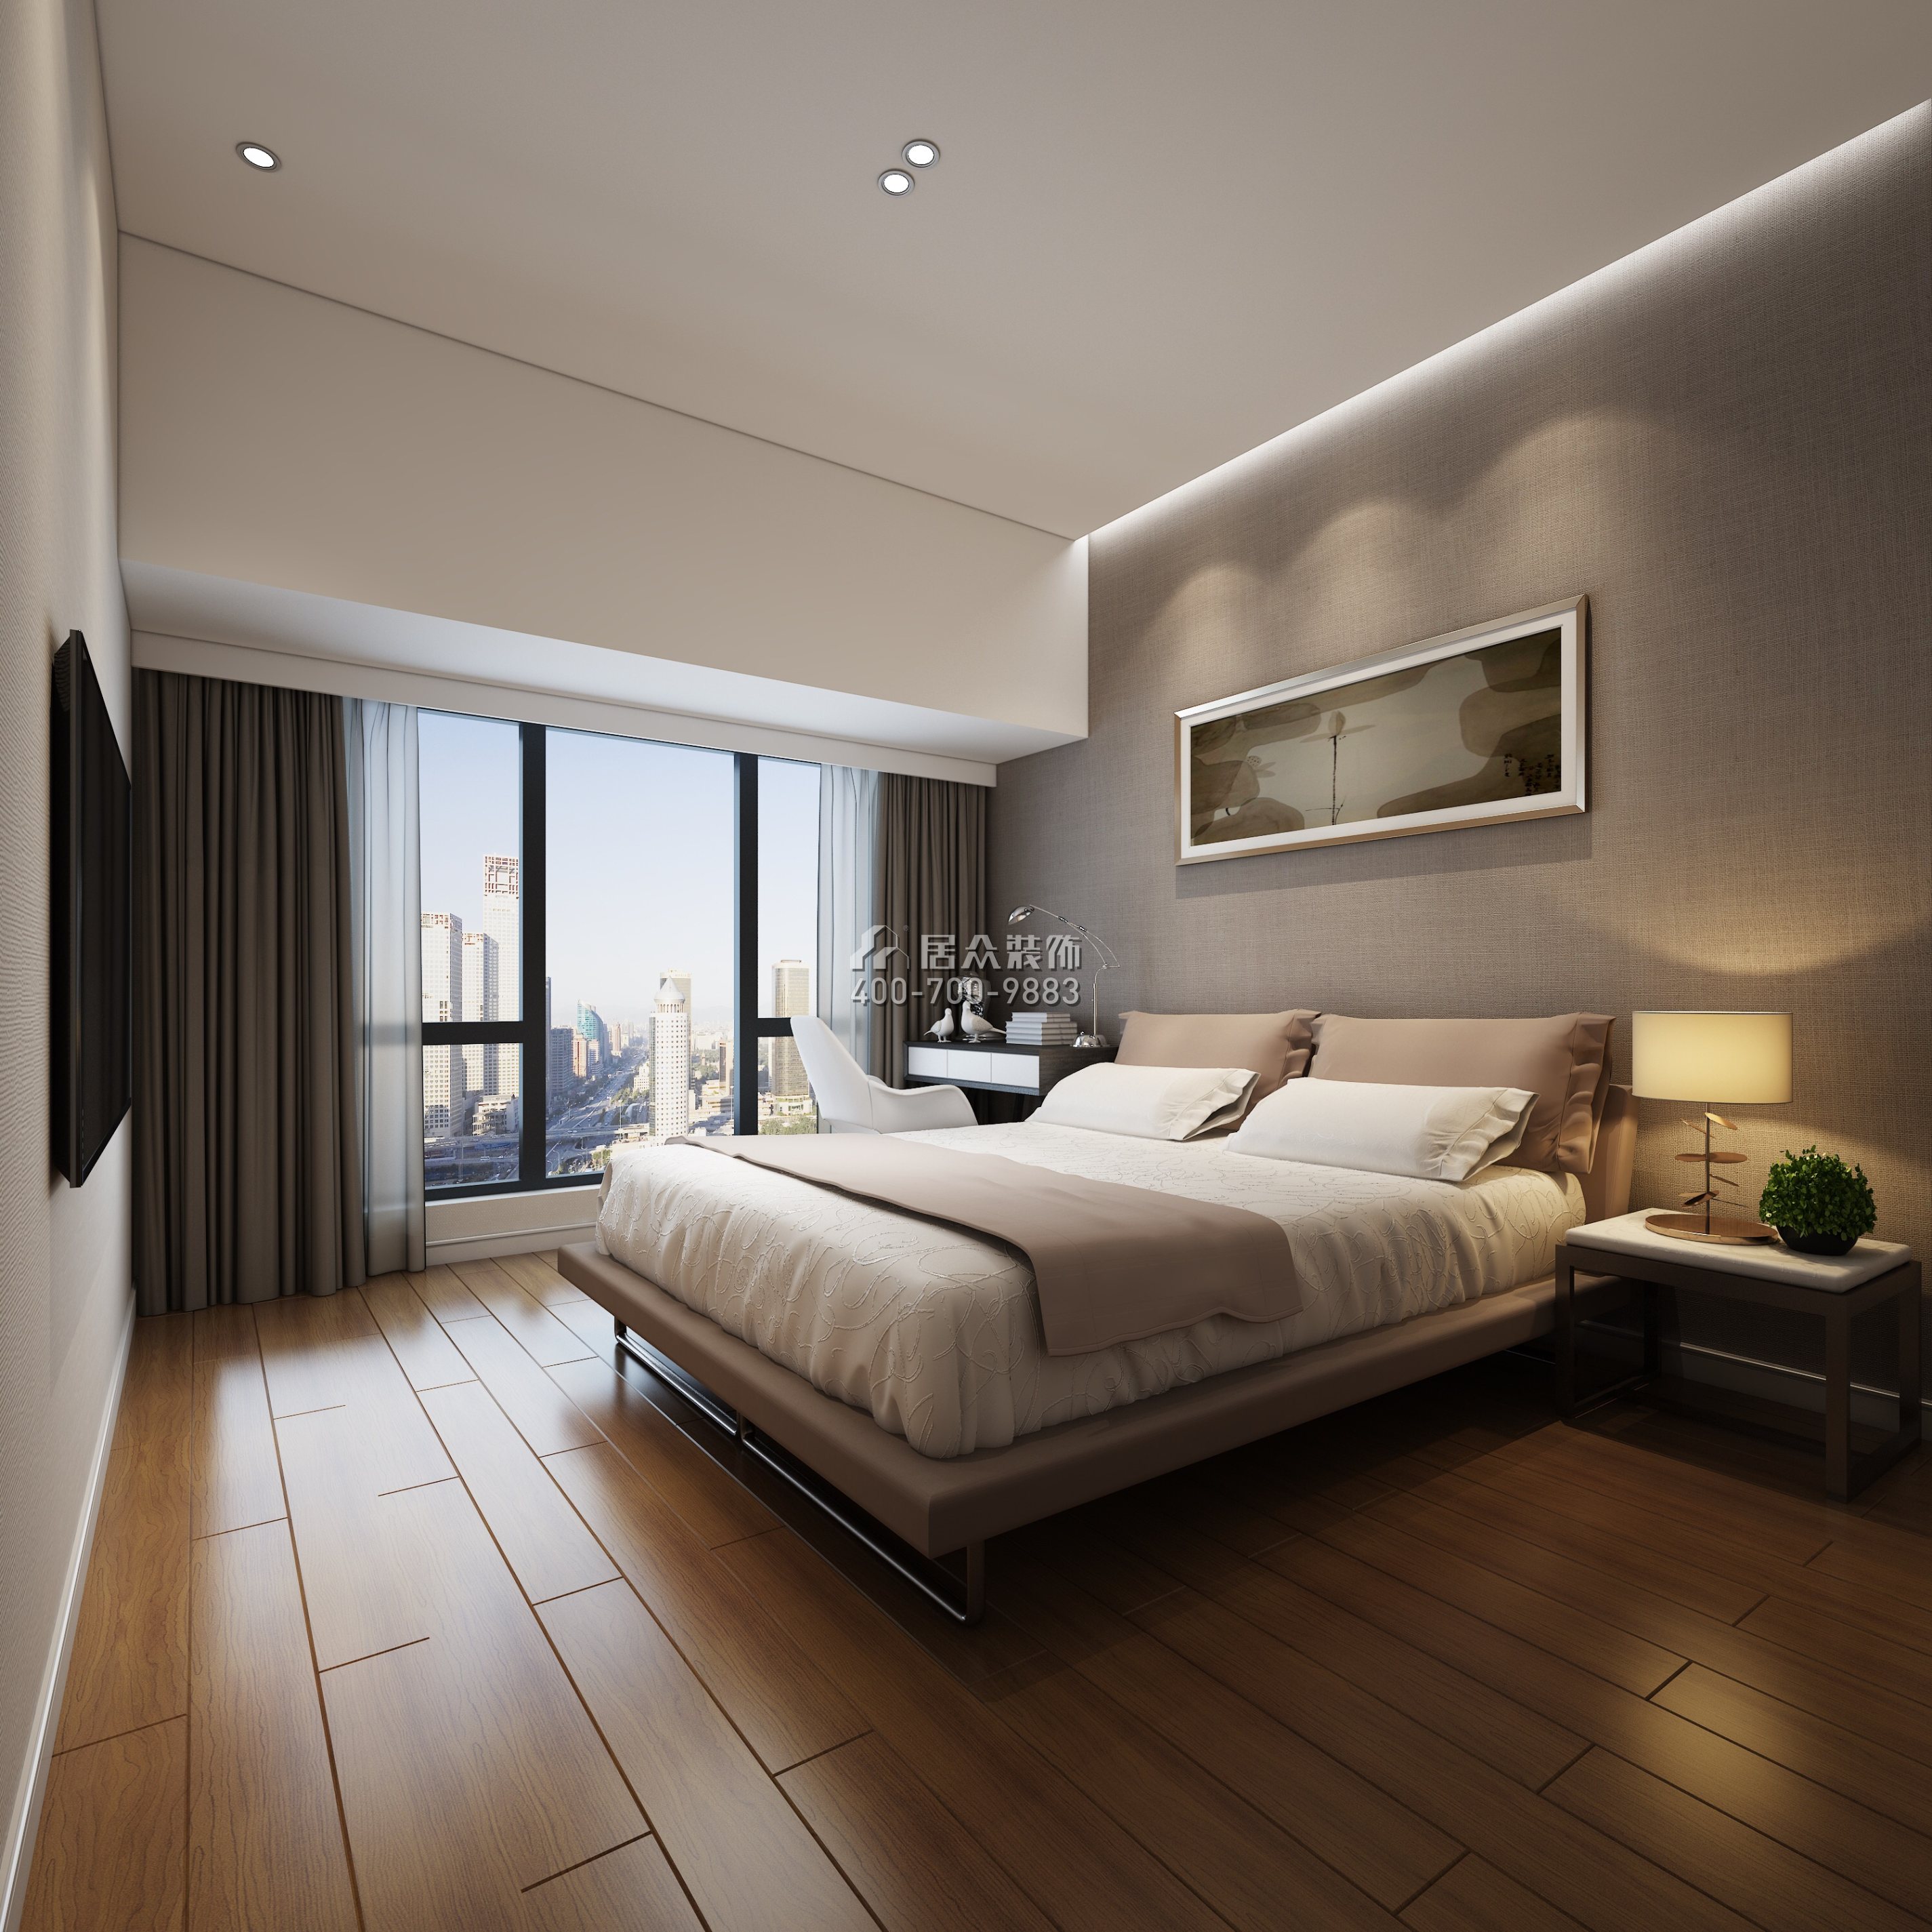 華潤城89平方米現代簡約風格平層戶型臥室裝修效果圖